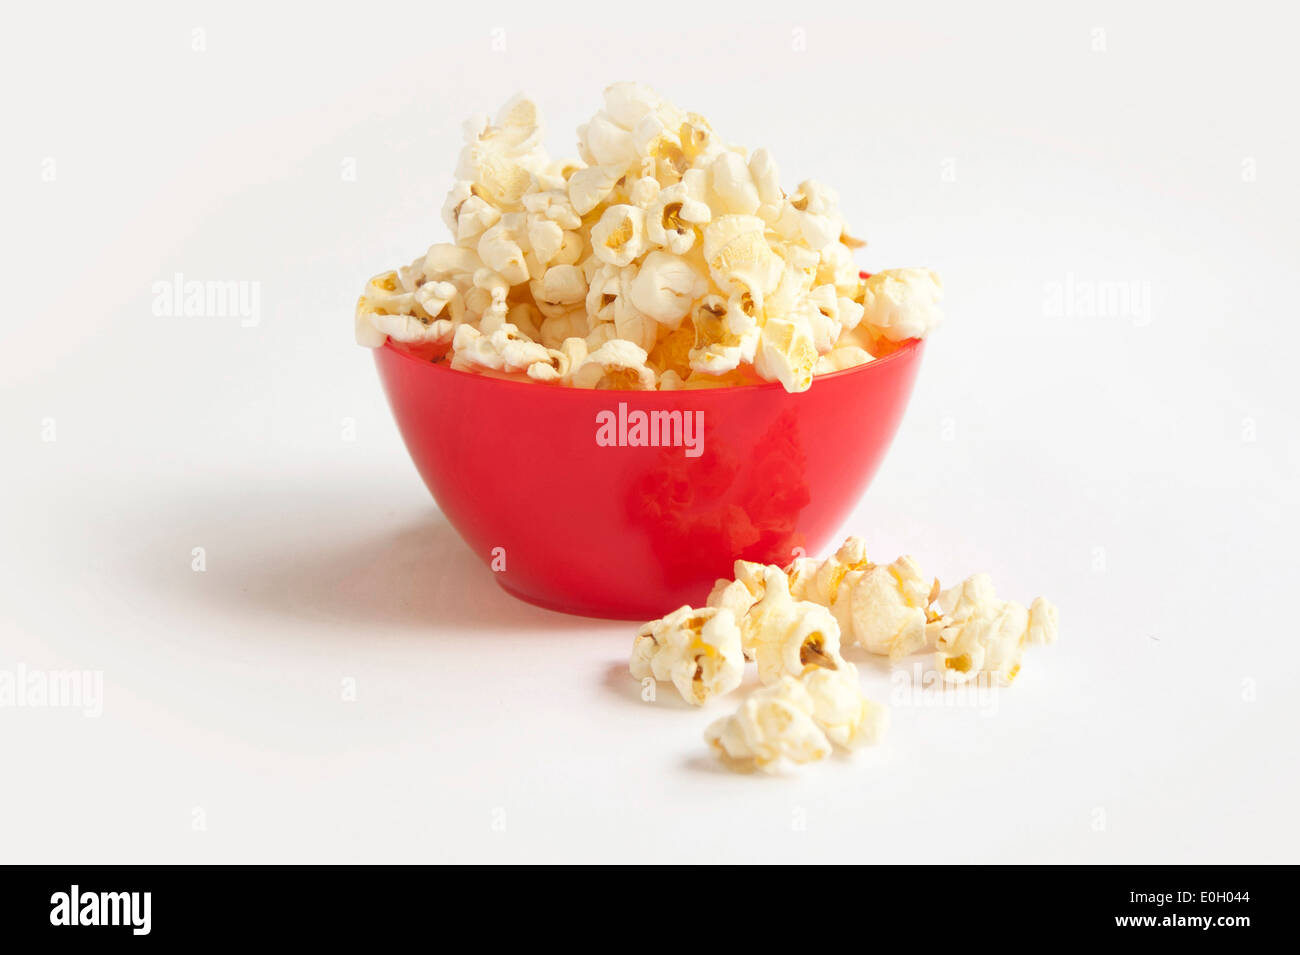 Popcorn in red bowl Stock Photo